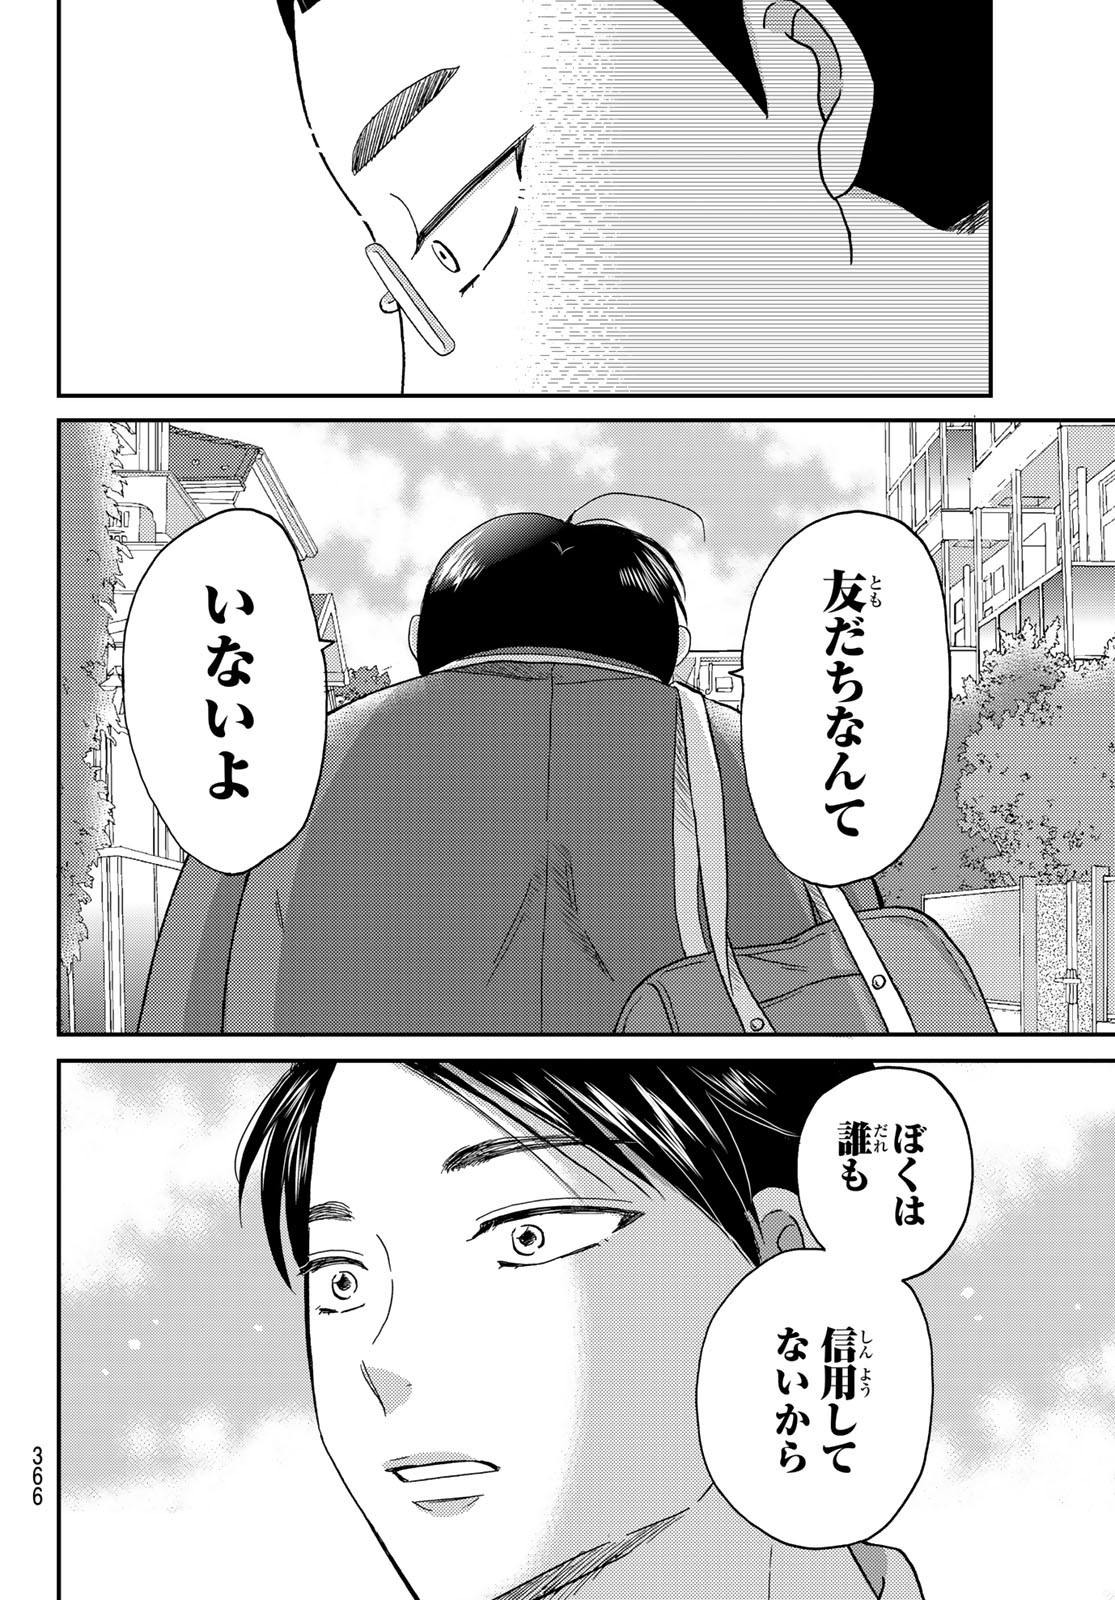 Hinata-san, Hoshino desu. - Chapter 027 - Page 4